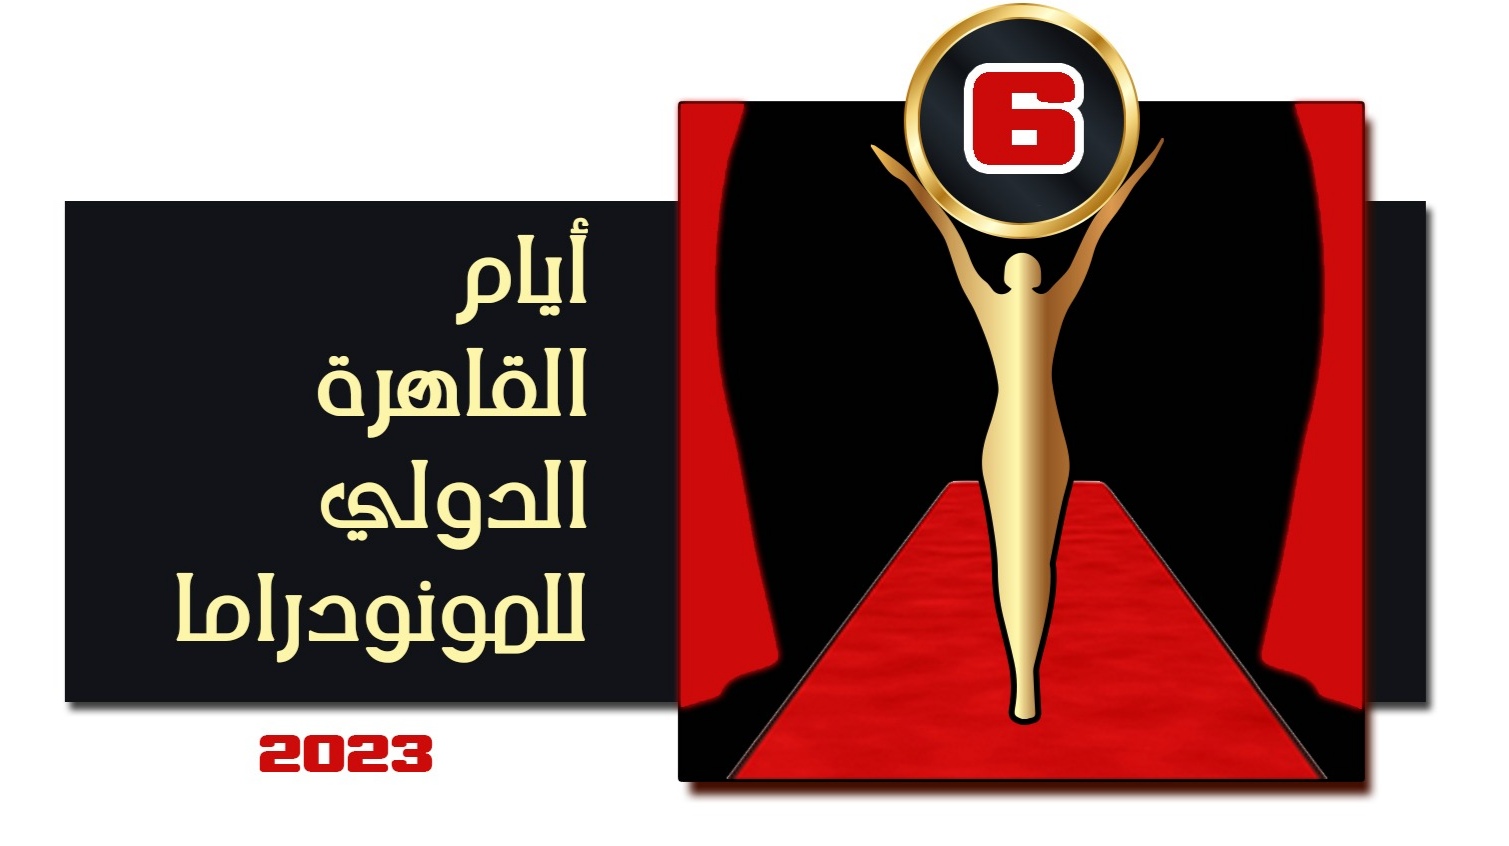 أيام القاهرة الدولي للمونودراما يفتح باب المشاركة للعروض في دورته السادسة 2023 (3)